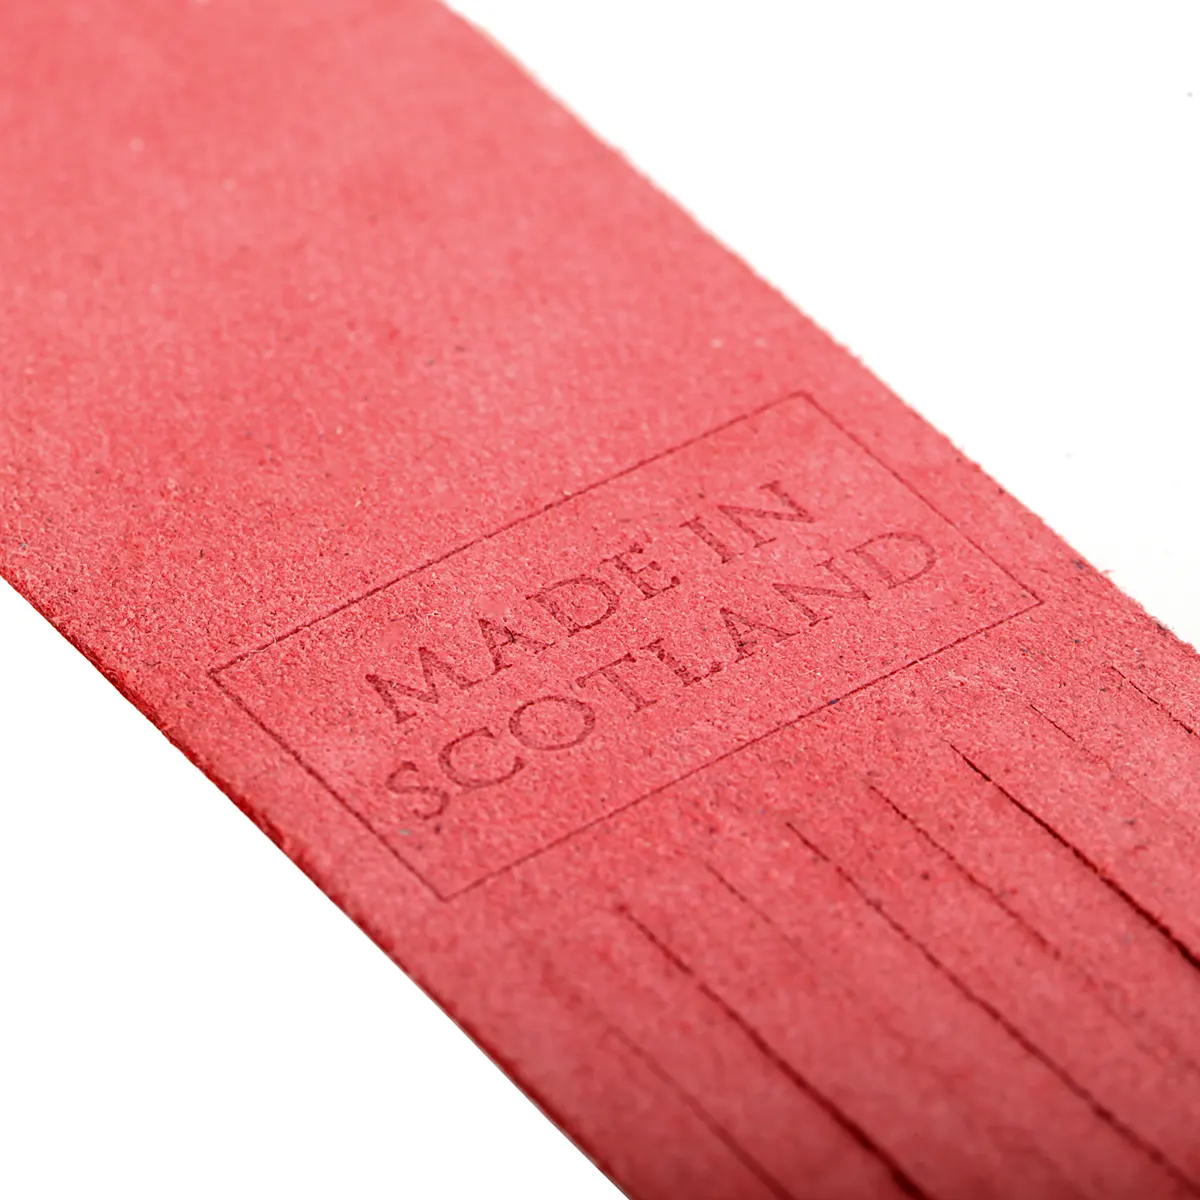 Aberdeen - Lesezeichen aus Leder in Rot - Made in Scotland